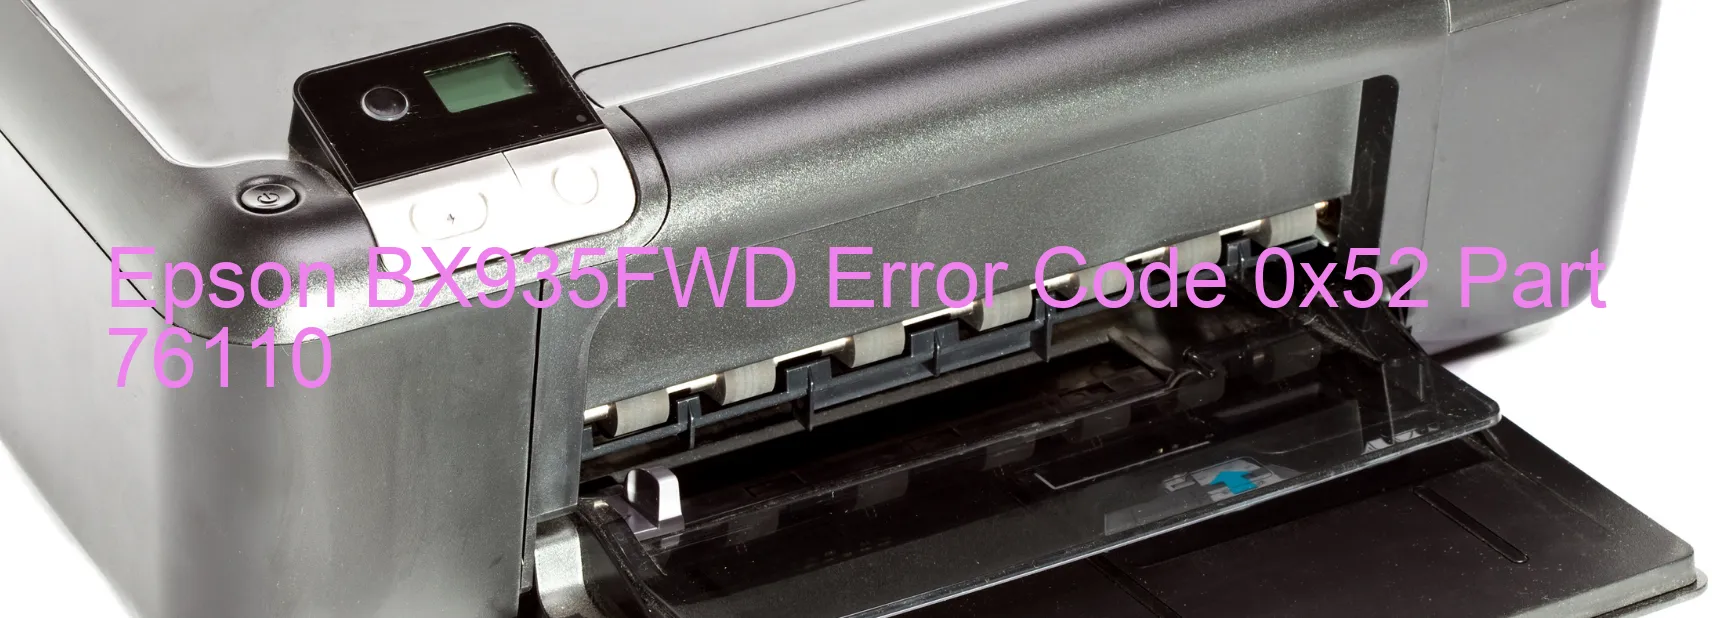 Epson BX935FWD Fehlercode 0x52